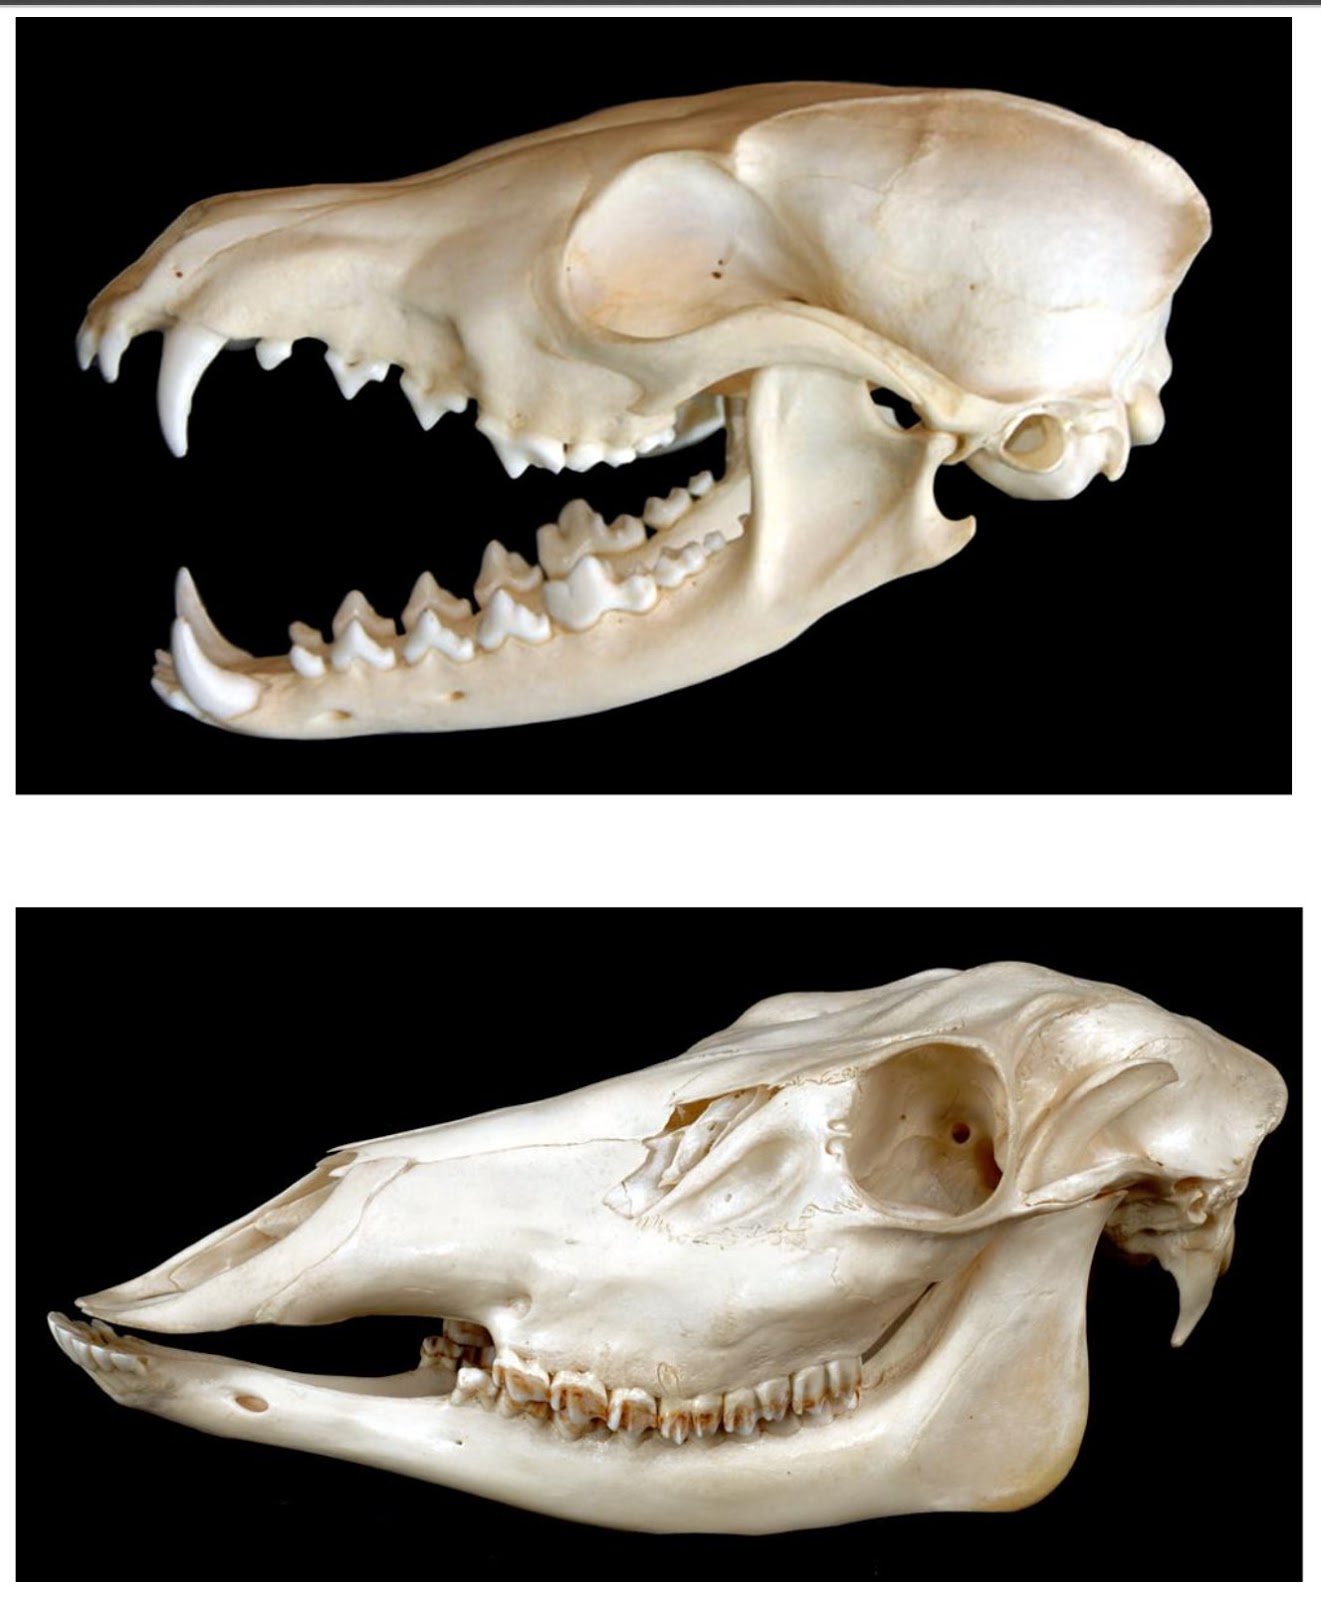 Small Animal Skull Identification Chart